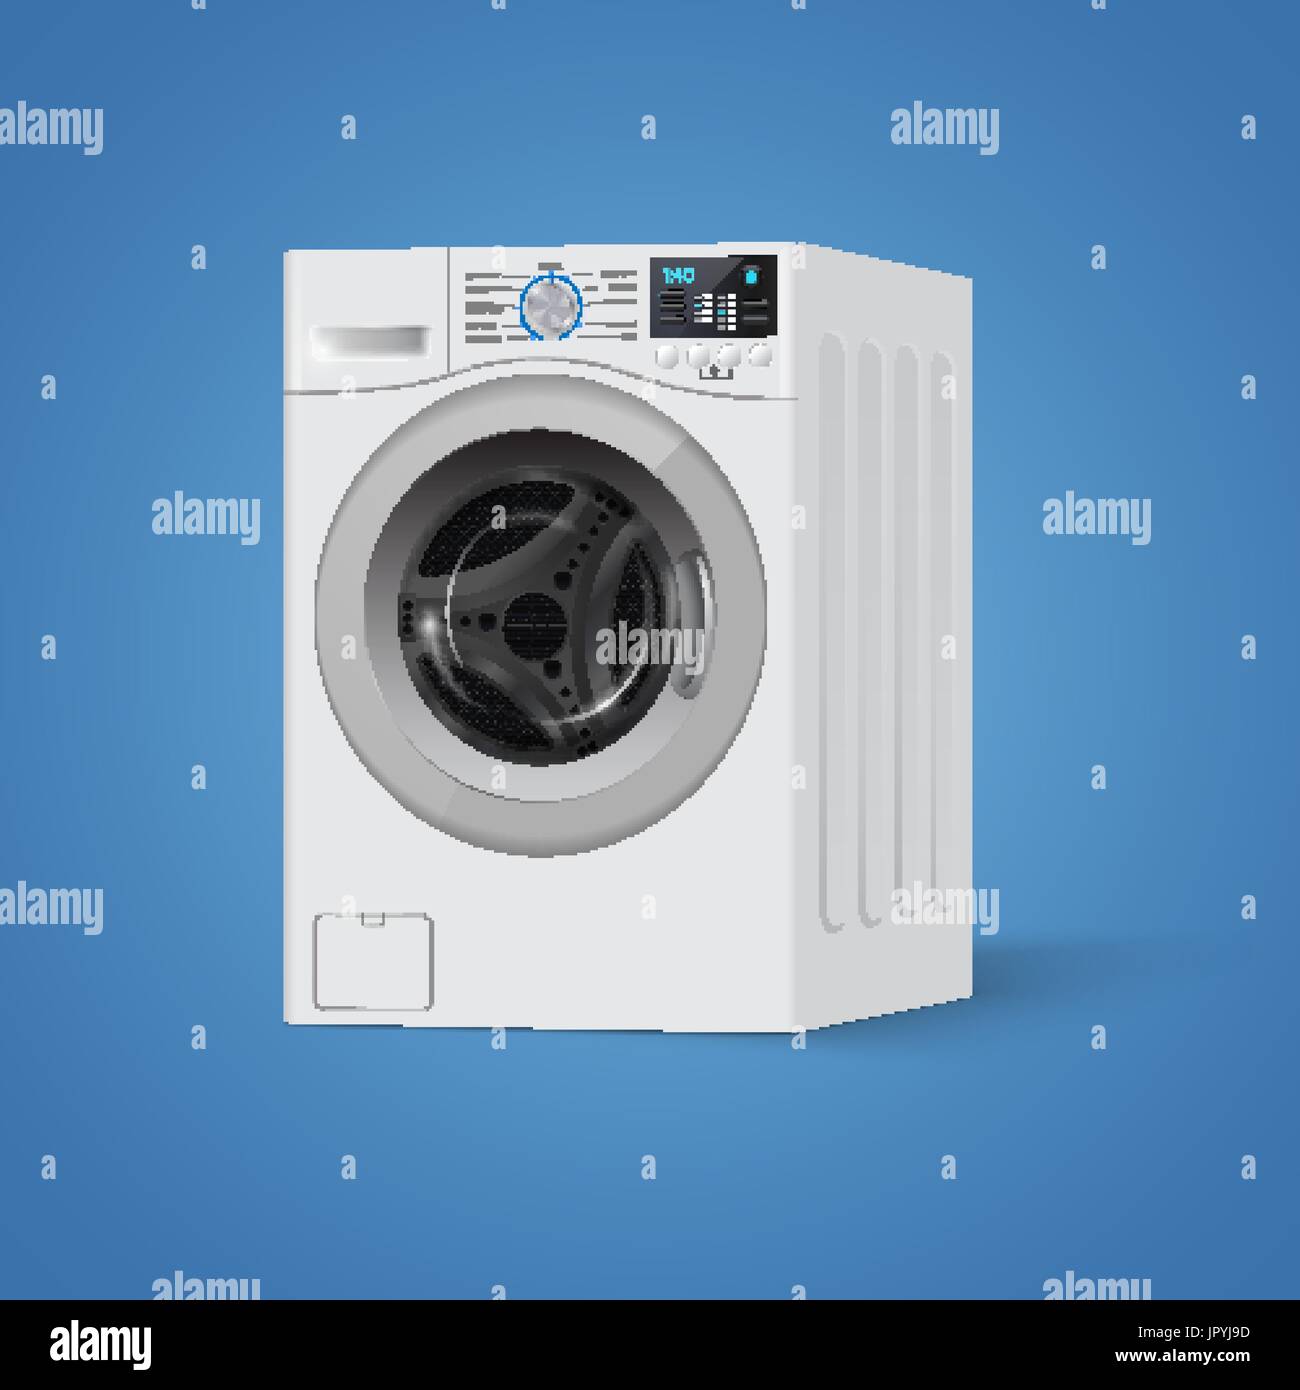 Realistische weiße Frontlader Waschmaschine auf blauem Grund. Vorderansicht, close-up. 3D realistische Vektor Unterlegscheibe. Stock Vektor